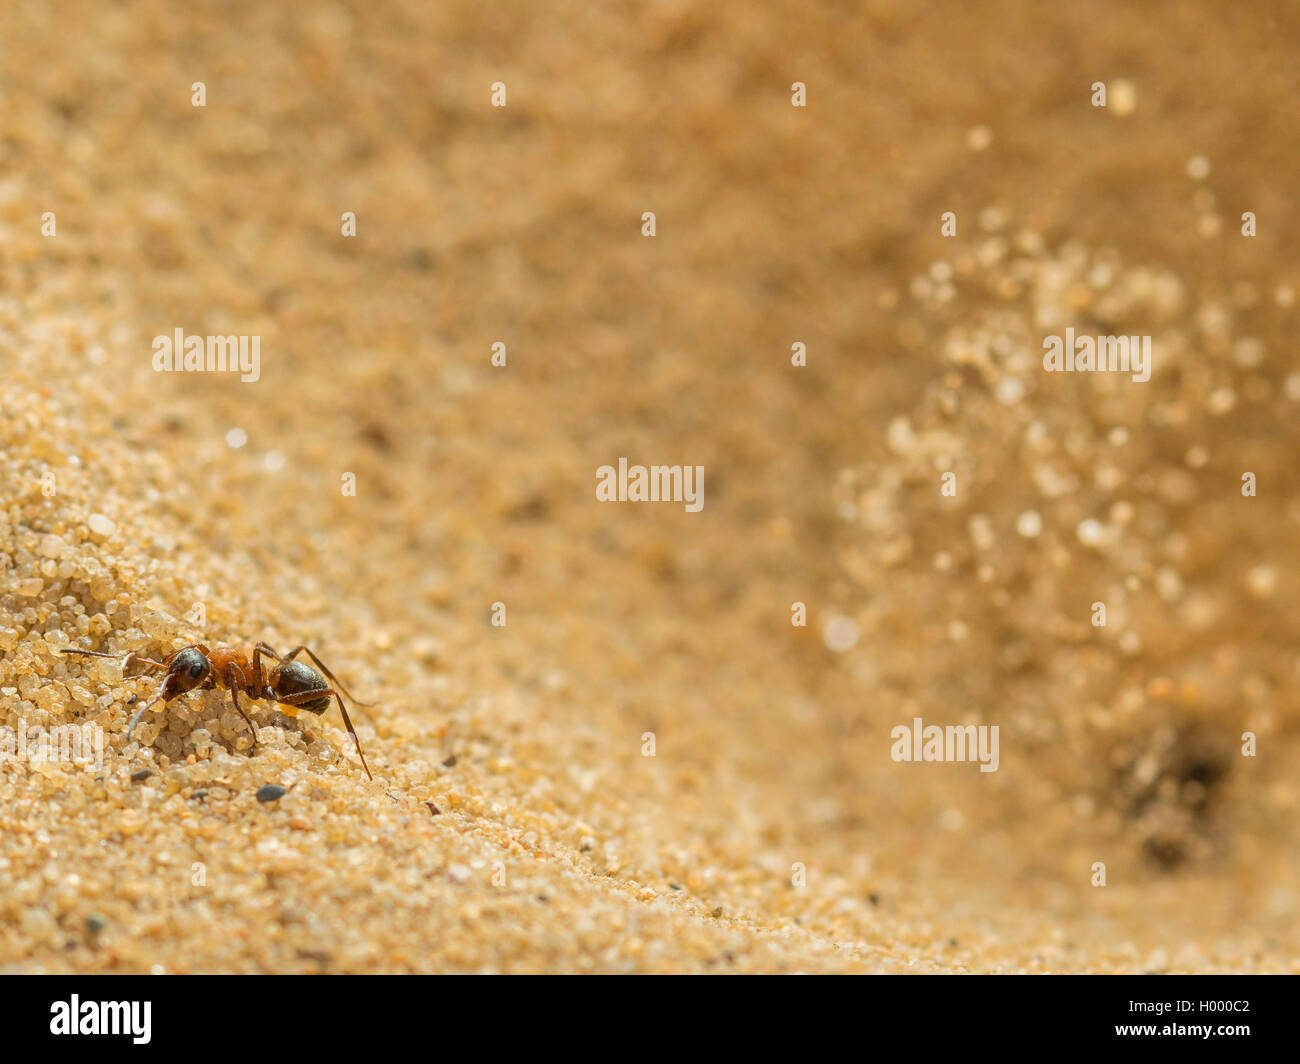 Europäische antlion (Euroleon nostras), Ant (Formica rufibarbis erfasst), die versuchen, aus den konischen Grube zu fliehen, während die Antlion Sand über und vor der Ant wirft, Deutschland Stockfoto